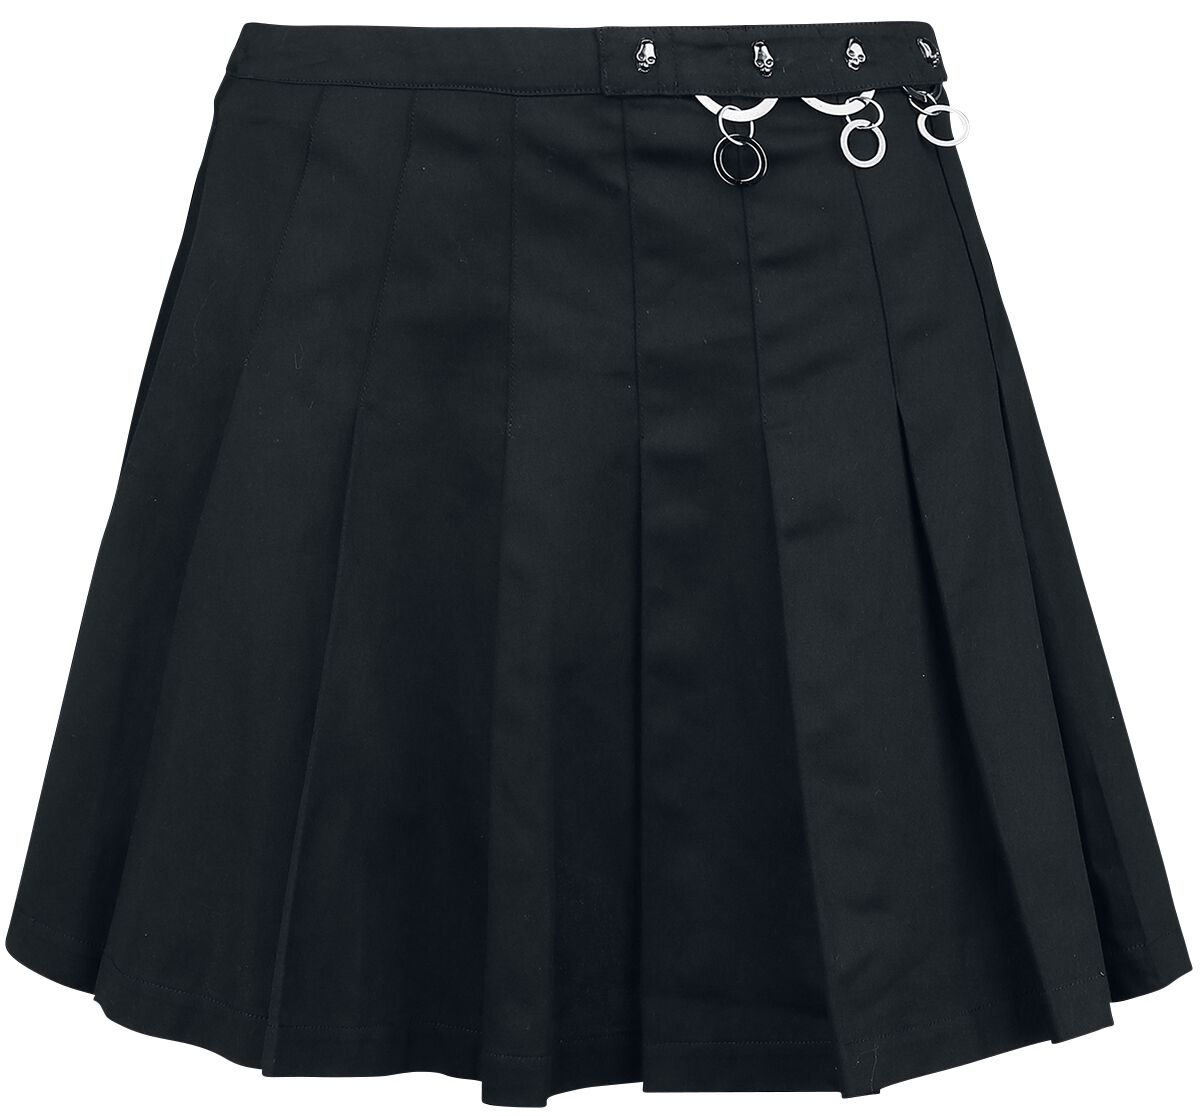 Banned Alternative - Gothic Kurzer Rock - Pleated Ring Skirt - XS bis XL - für Damen - Größe XS - schwarz